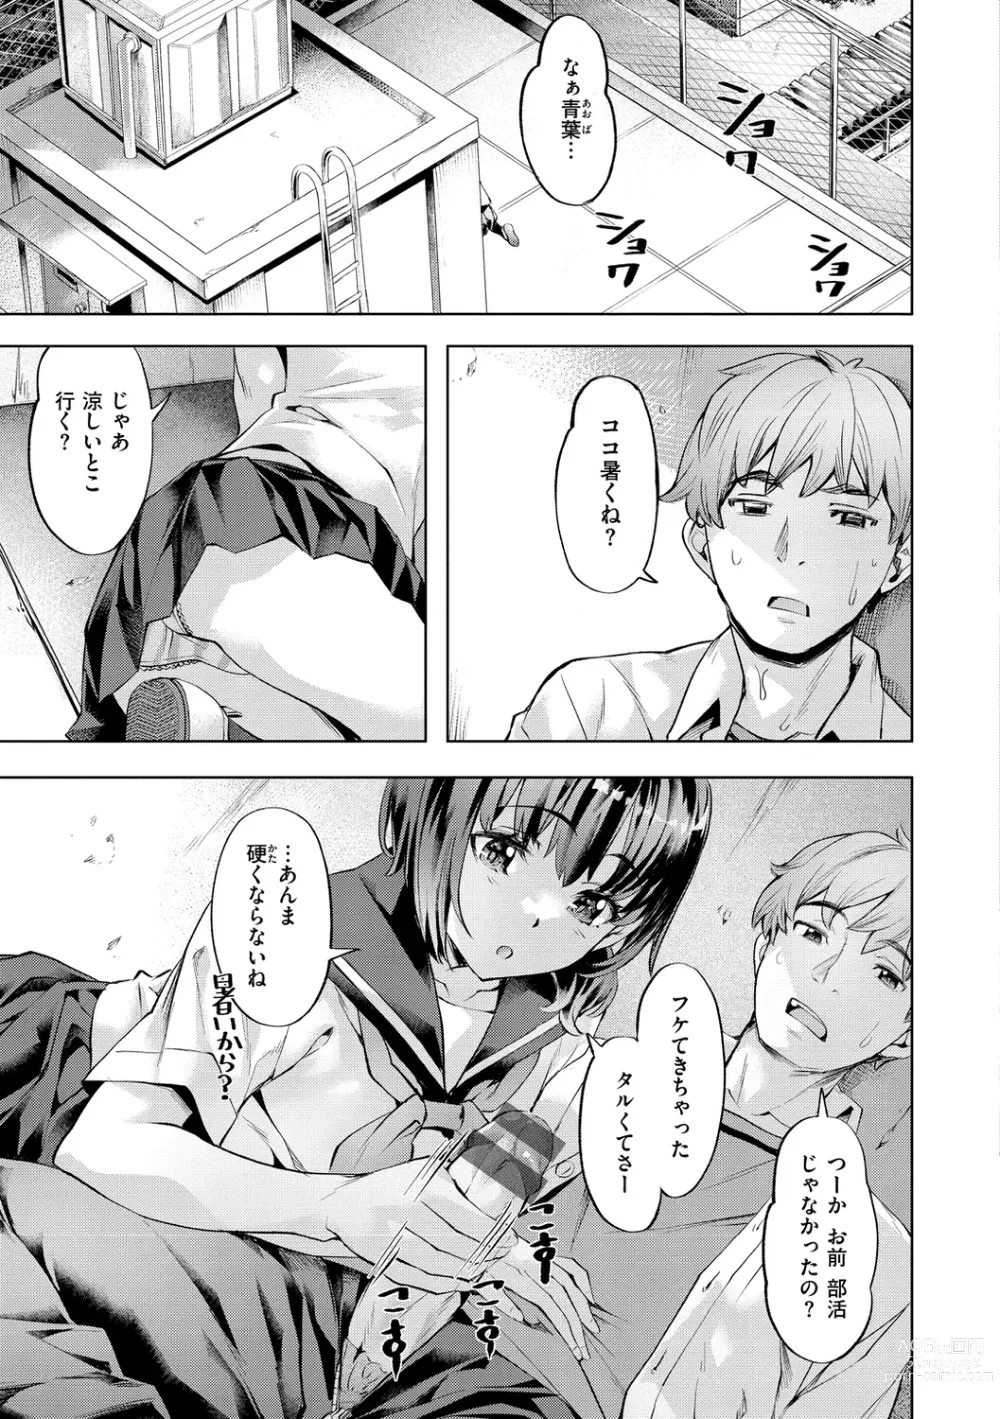 Page 5 of manga Binetsu Emotion - Sensual Emotion